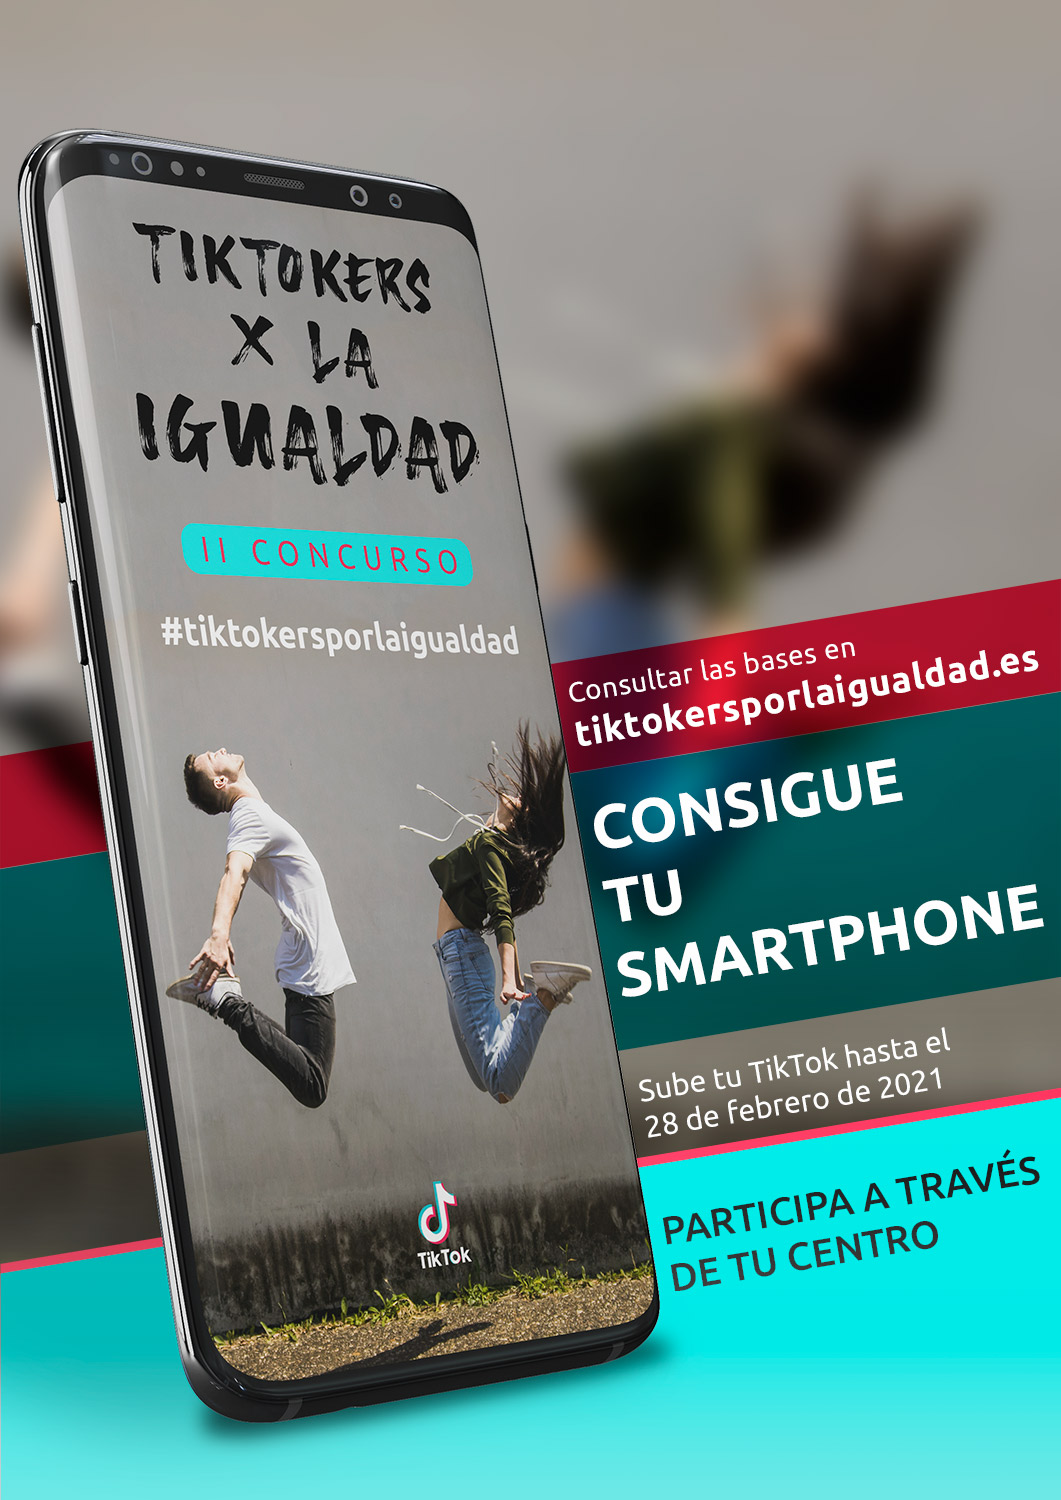 https://tiktokersporlaigualdad.es/wp-content/uploads/2020/11/Cartel-Concurso-Tiktokers-por-la-Igualdad-Almeria.jpg